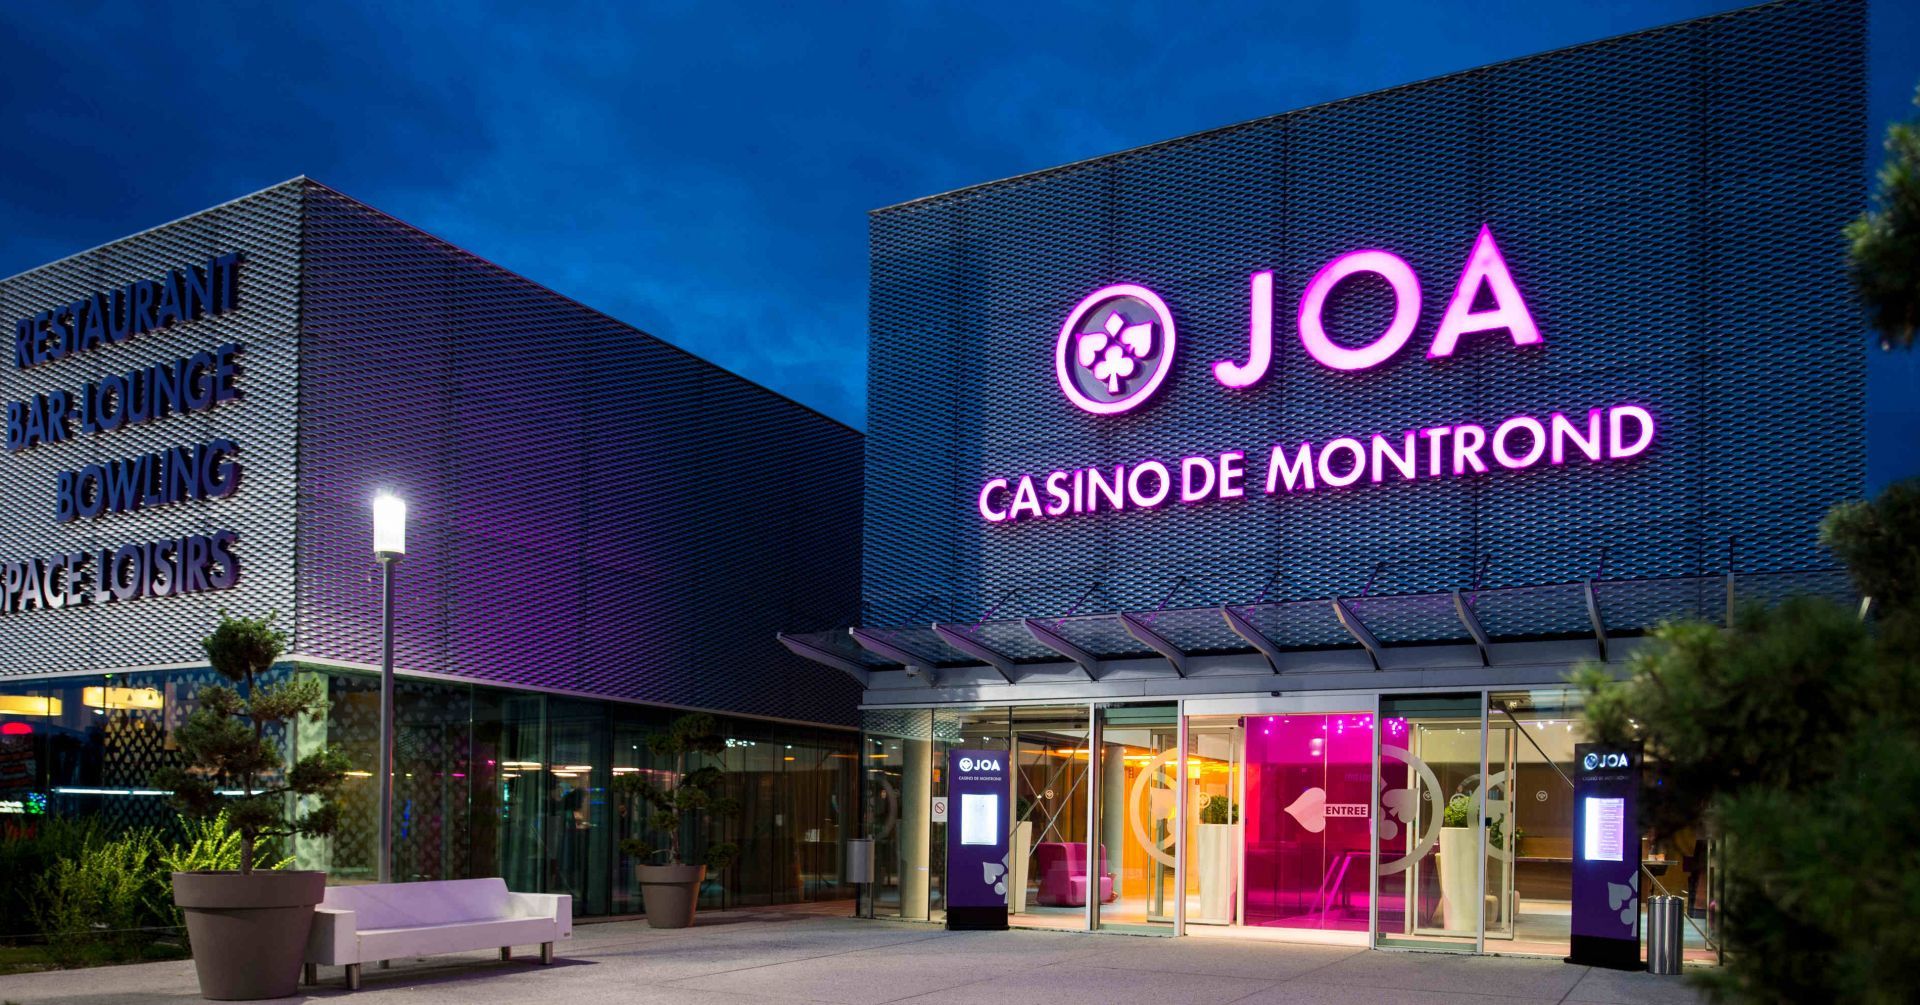 Casino JOA Montrond